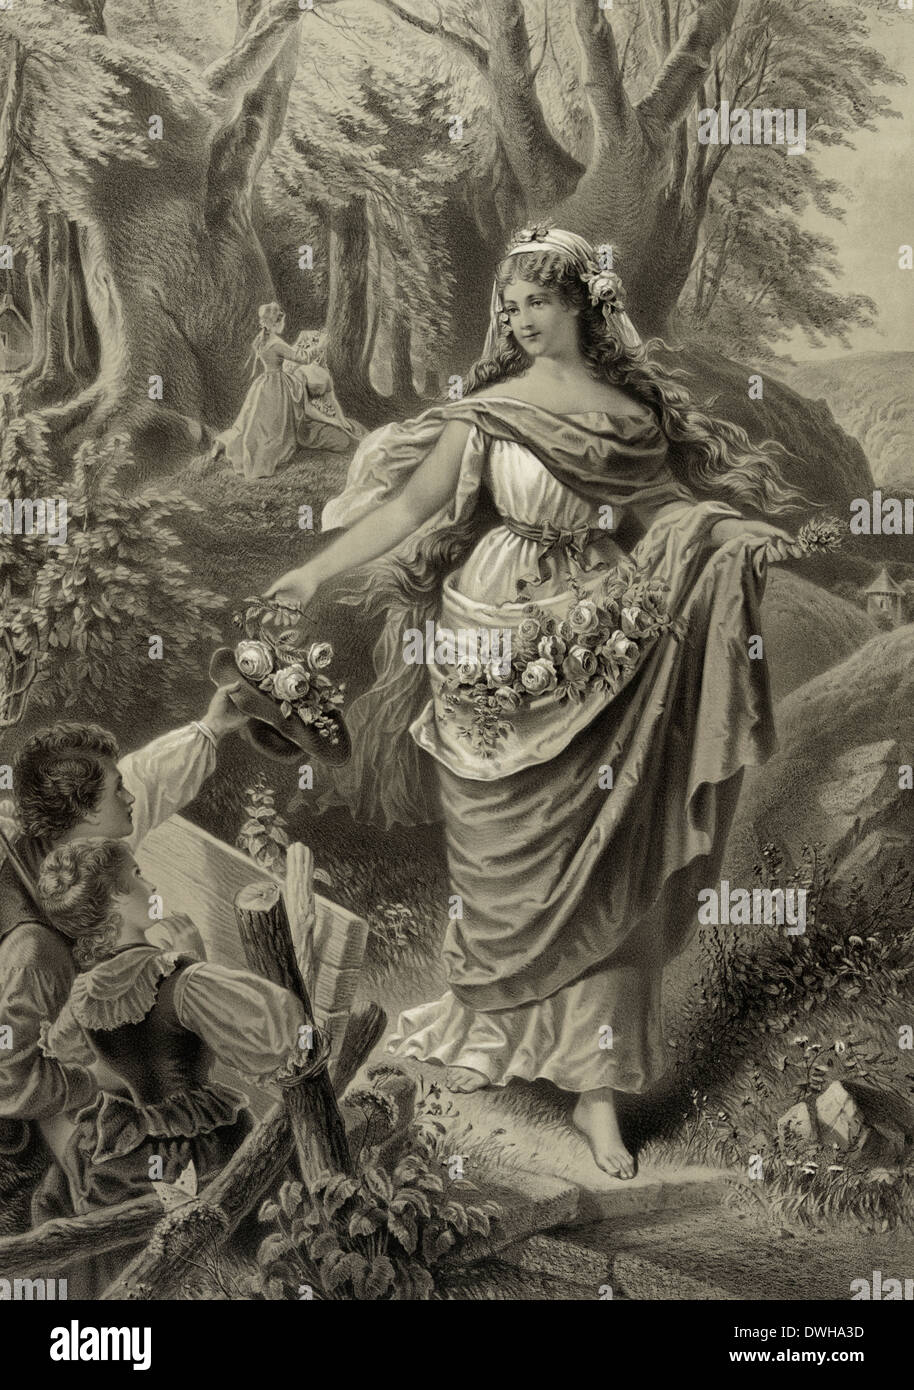 Das madchen aus der fremde - The Maiden from a Foreign Land , 1879 Stock Photo